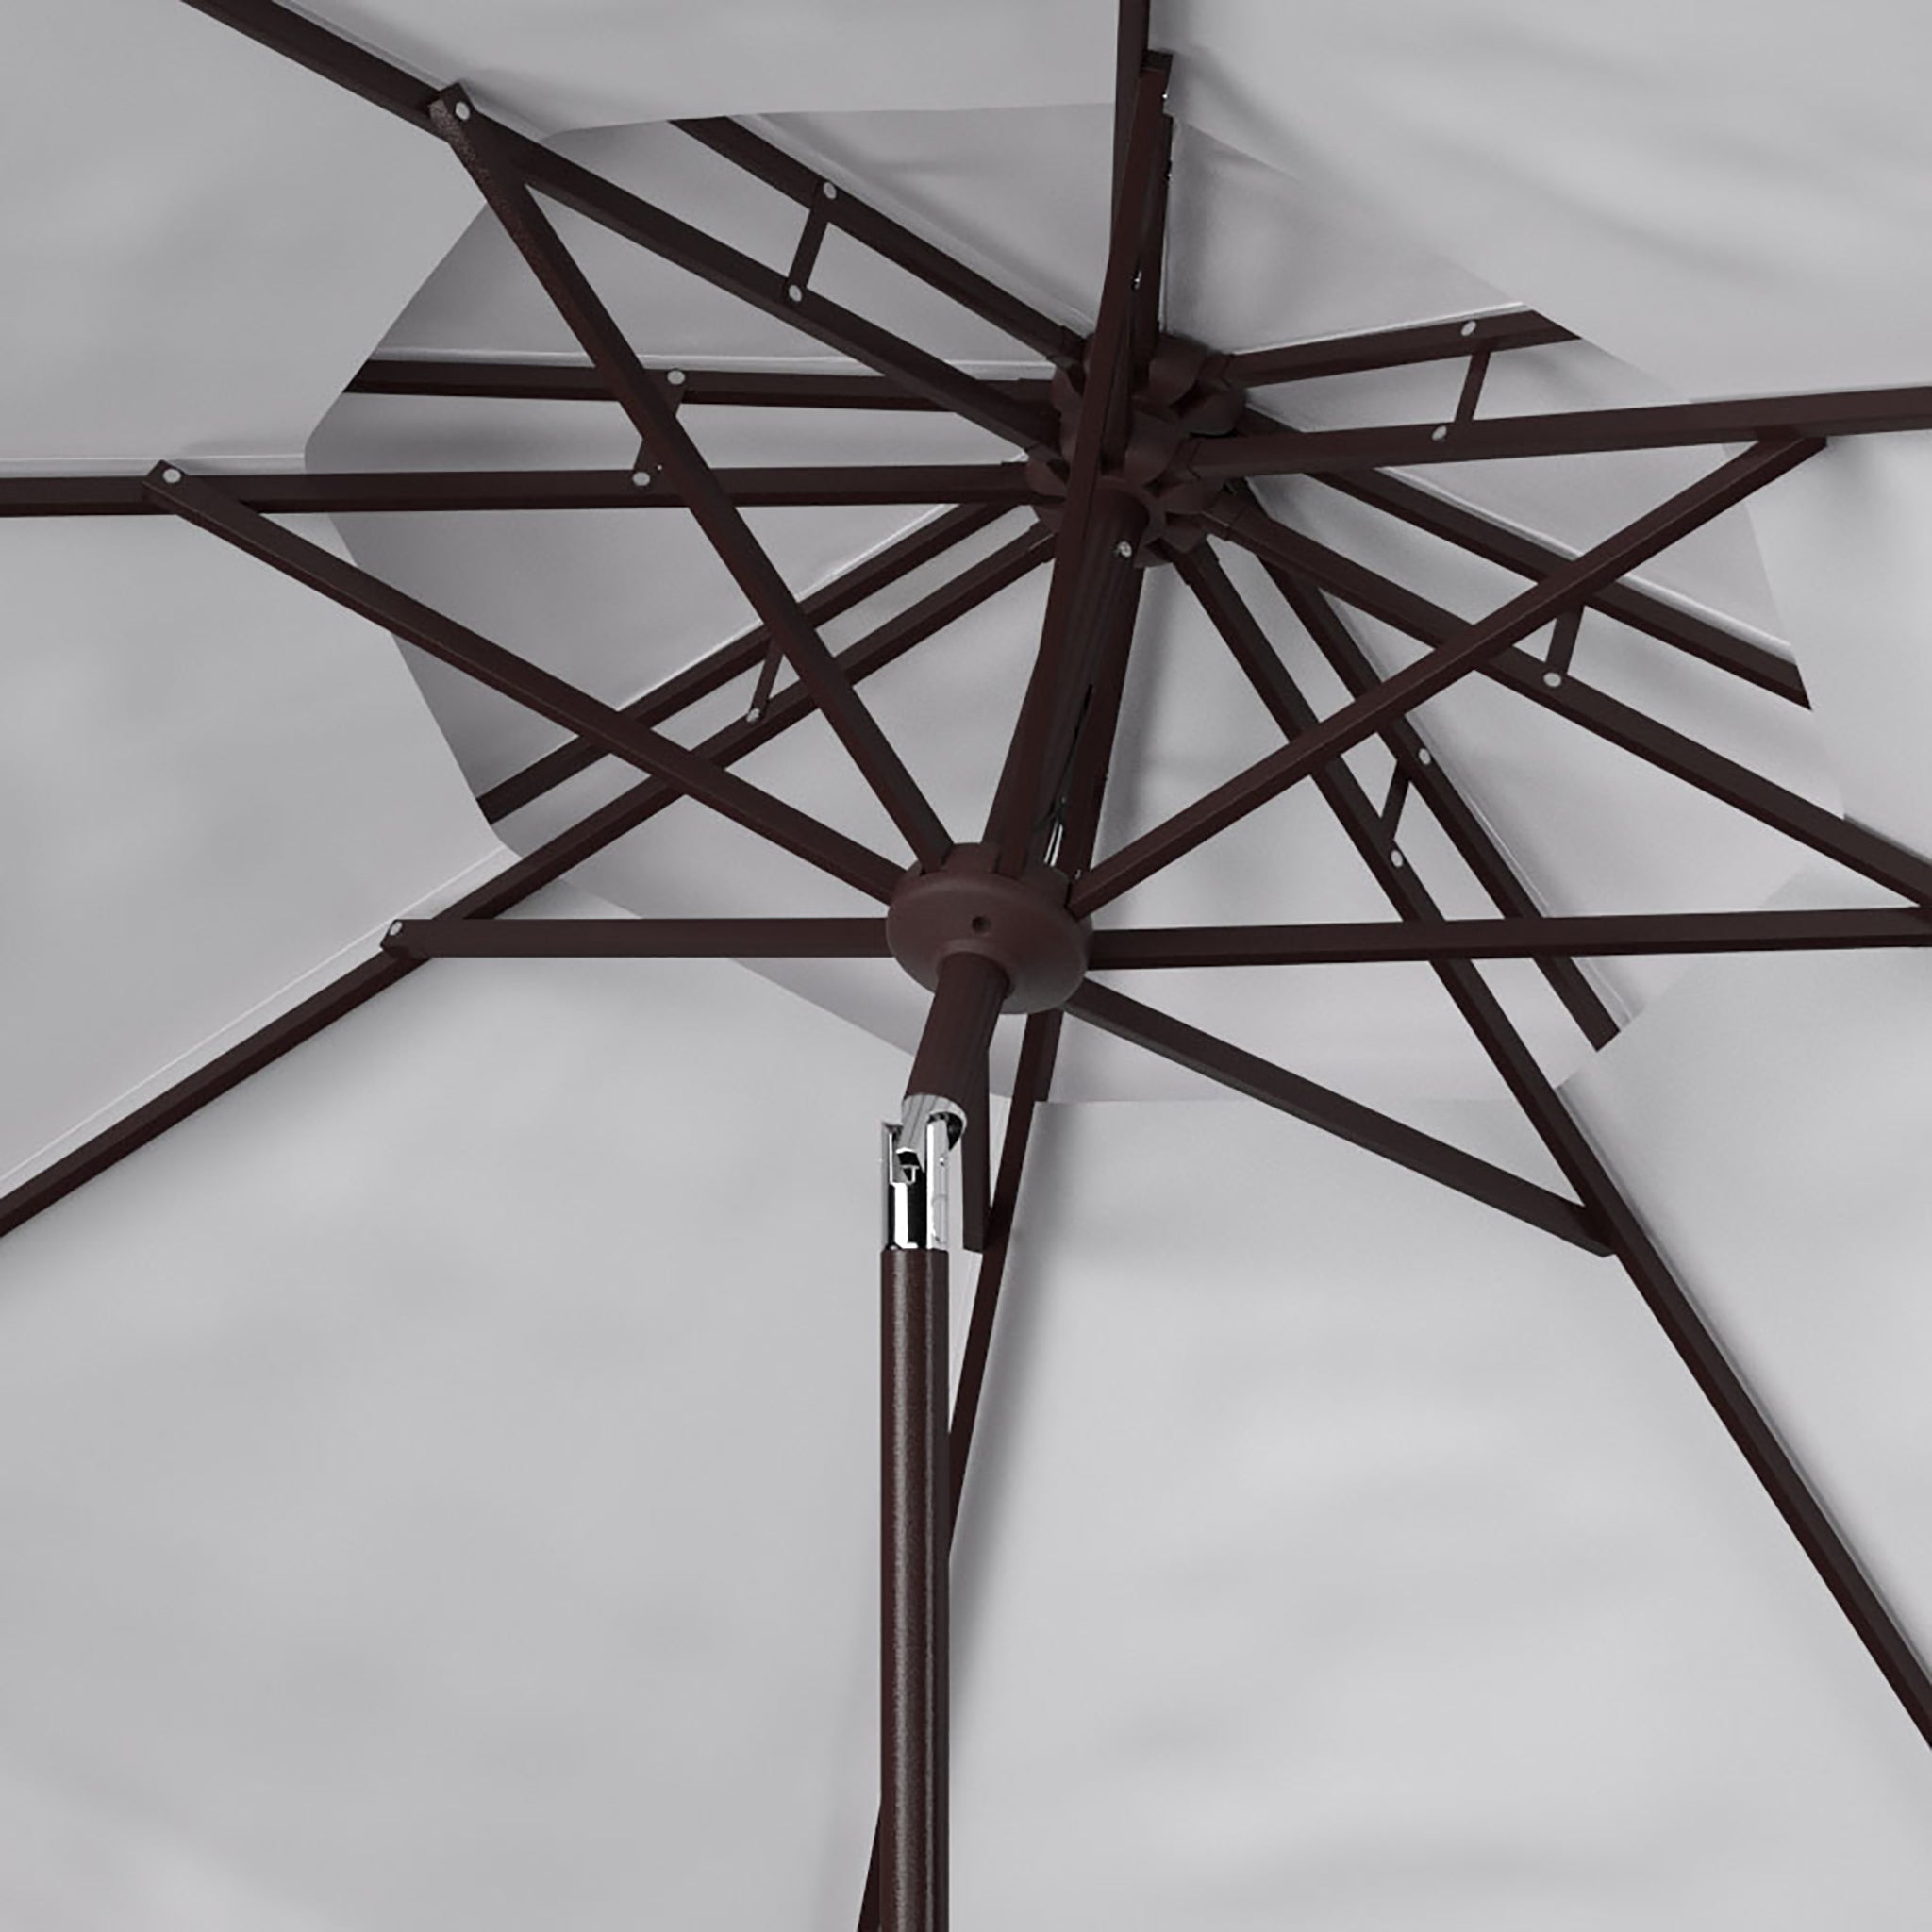 Melton Double-Top Umbrella